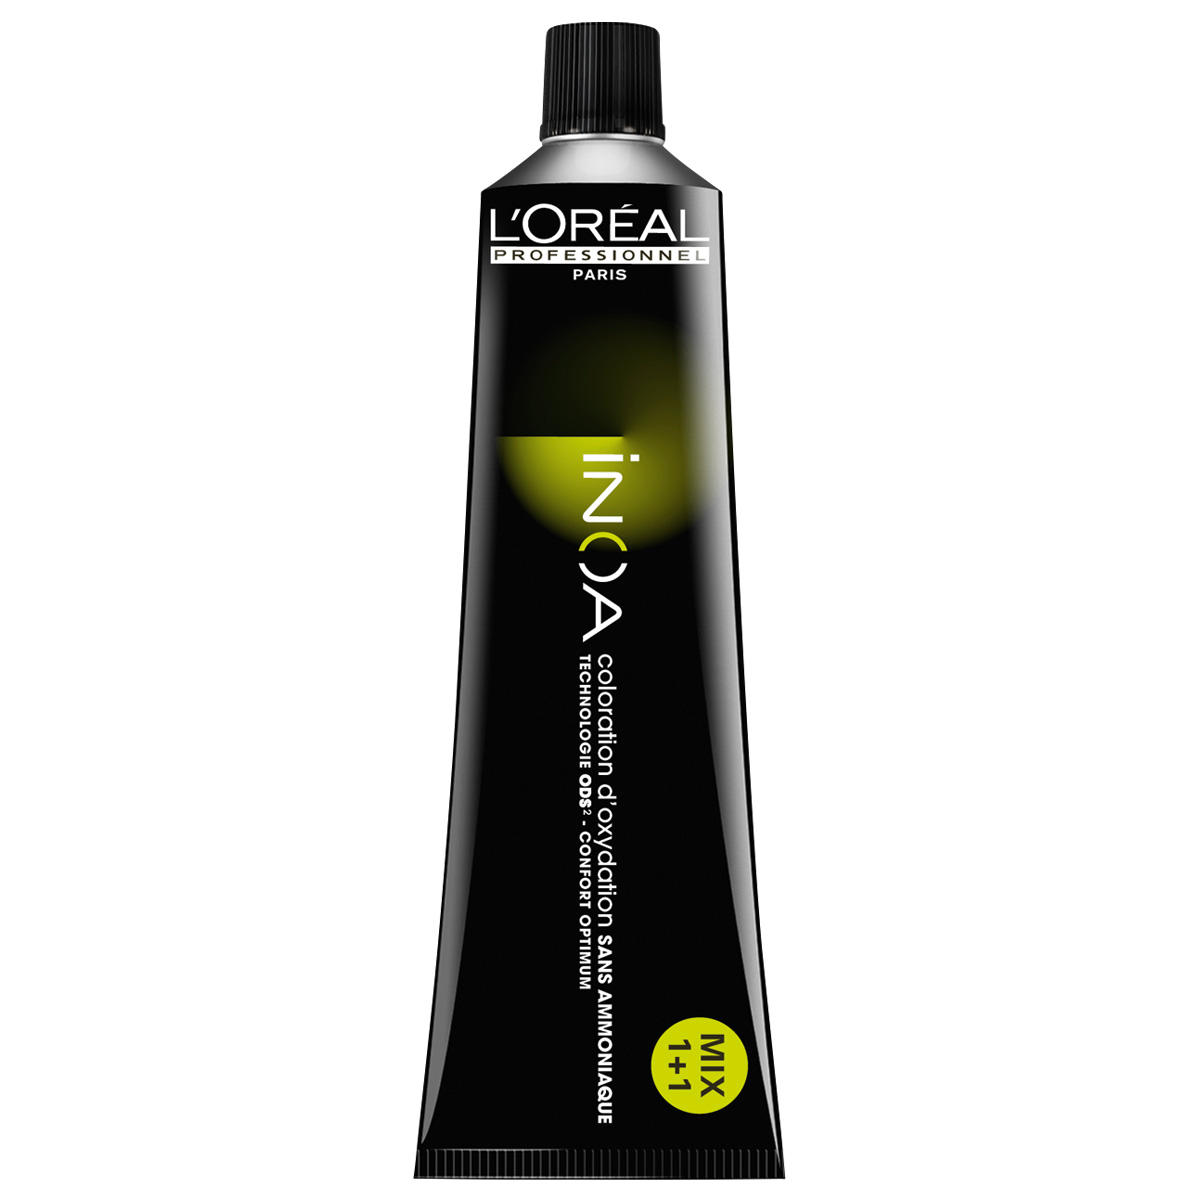 L'Oréal Professionnel Paris Coloration 9.0 Zeer Licht Blond Intensief, Tube 60 ml - 1